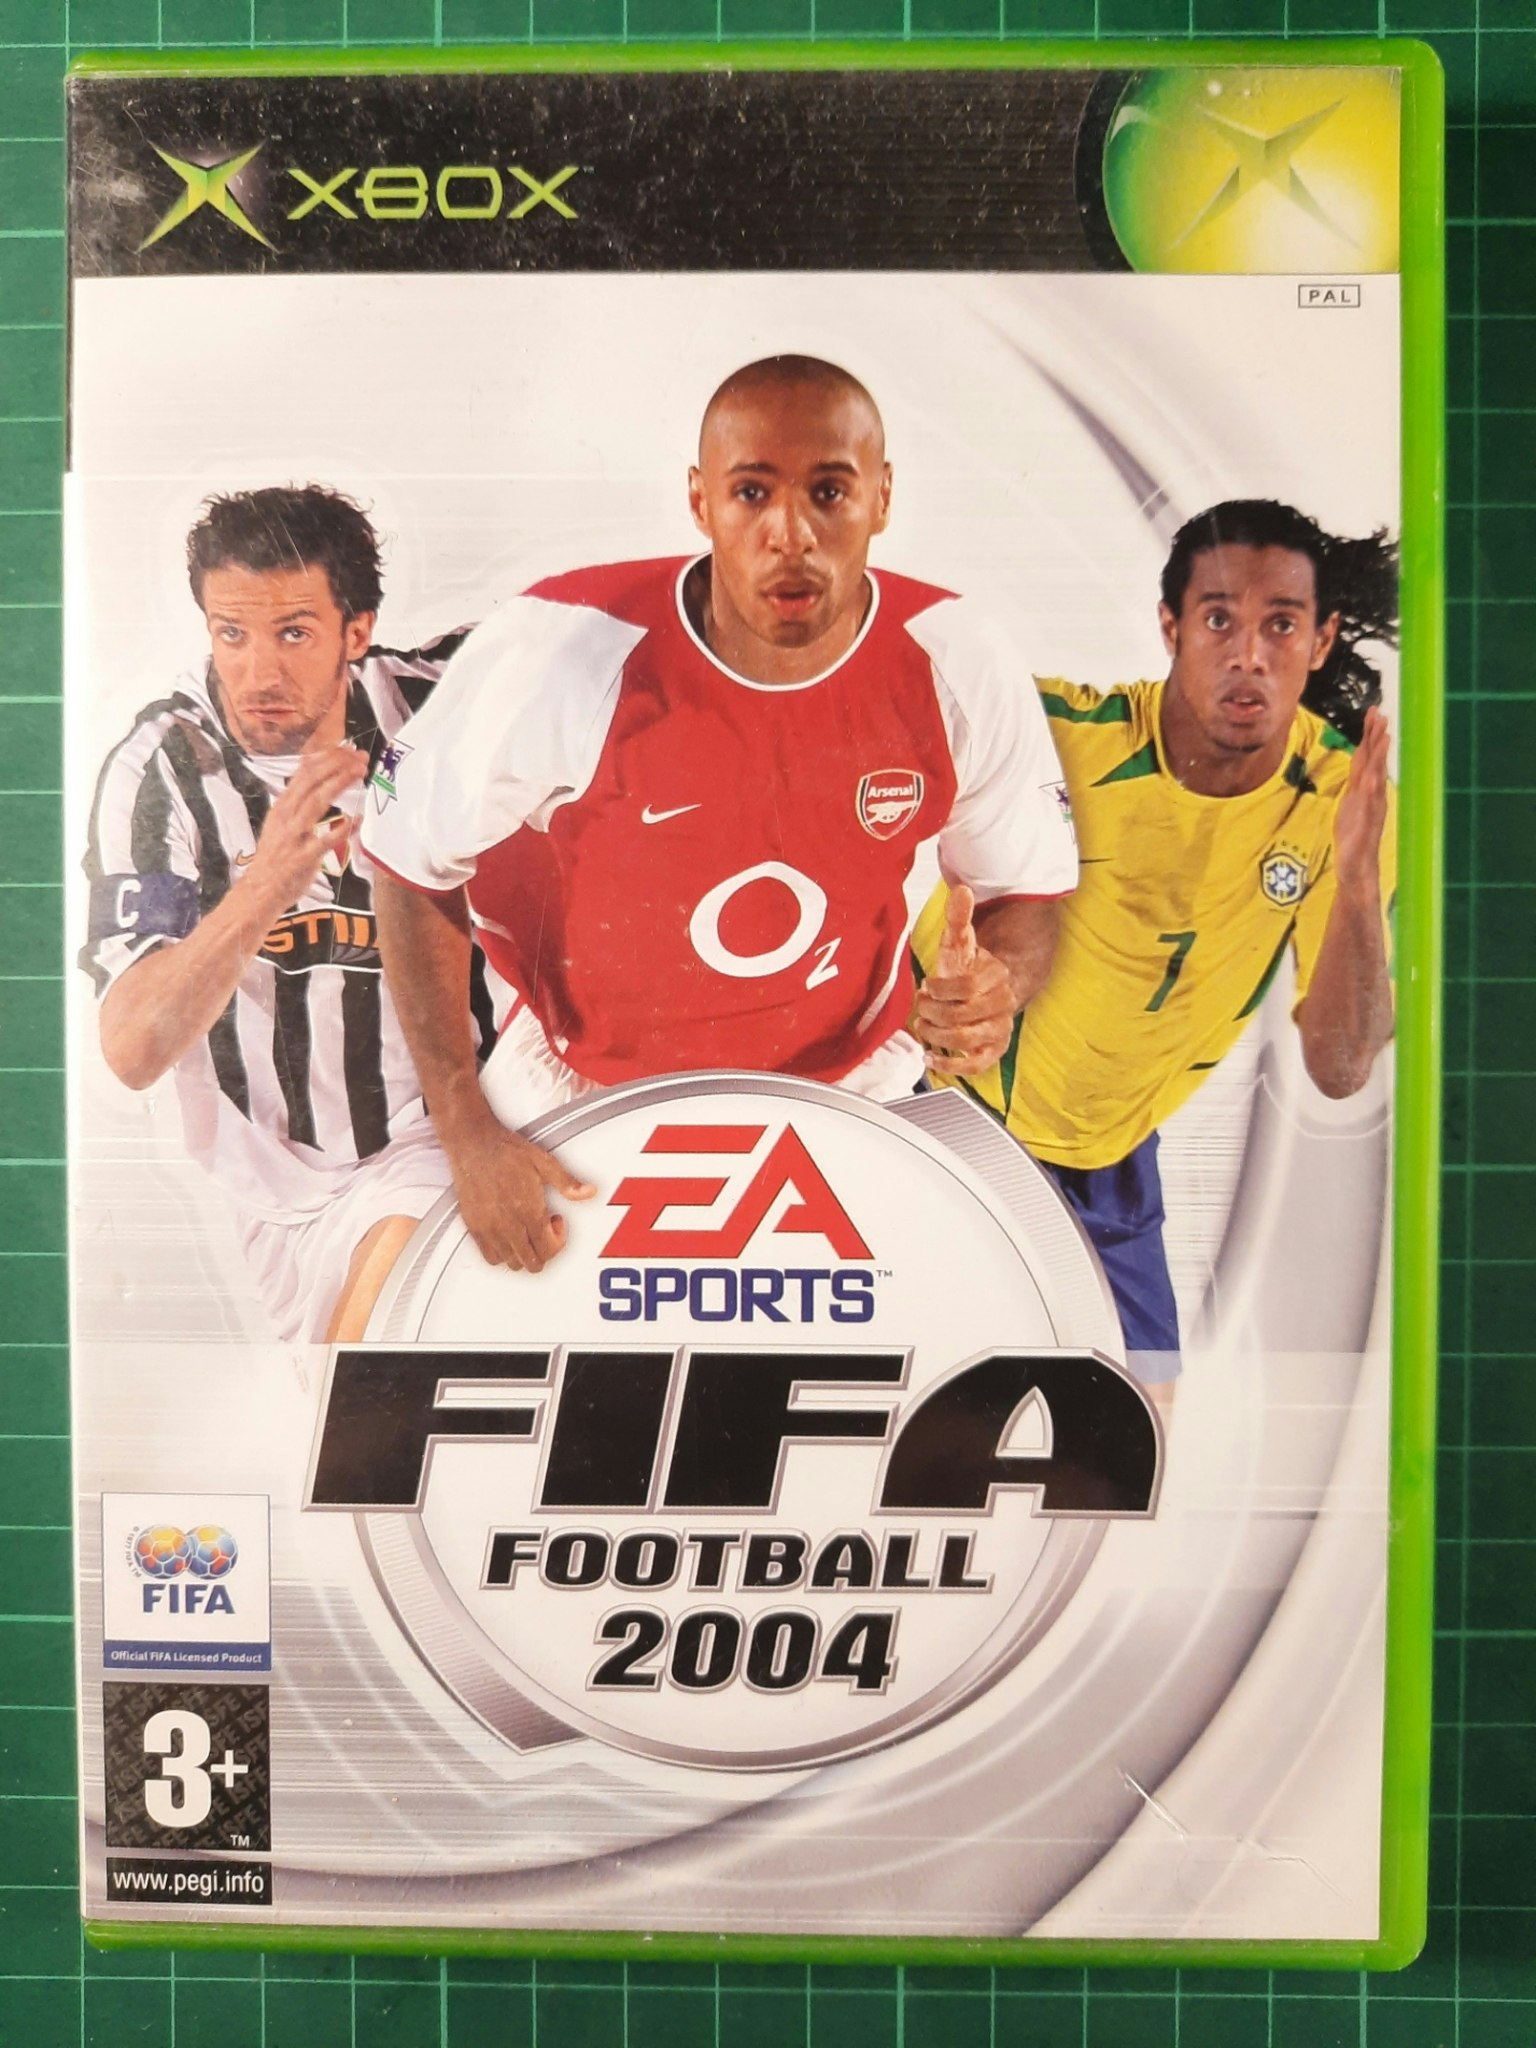 Xbox : Fifa football 2004